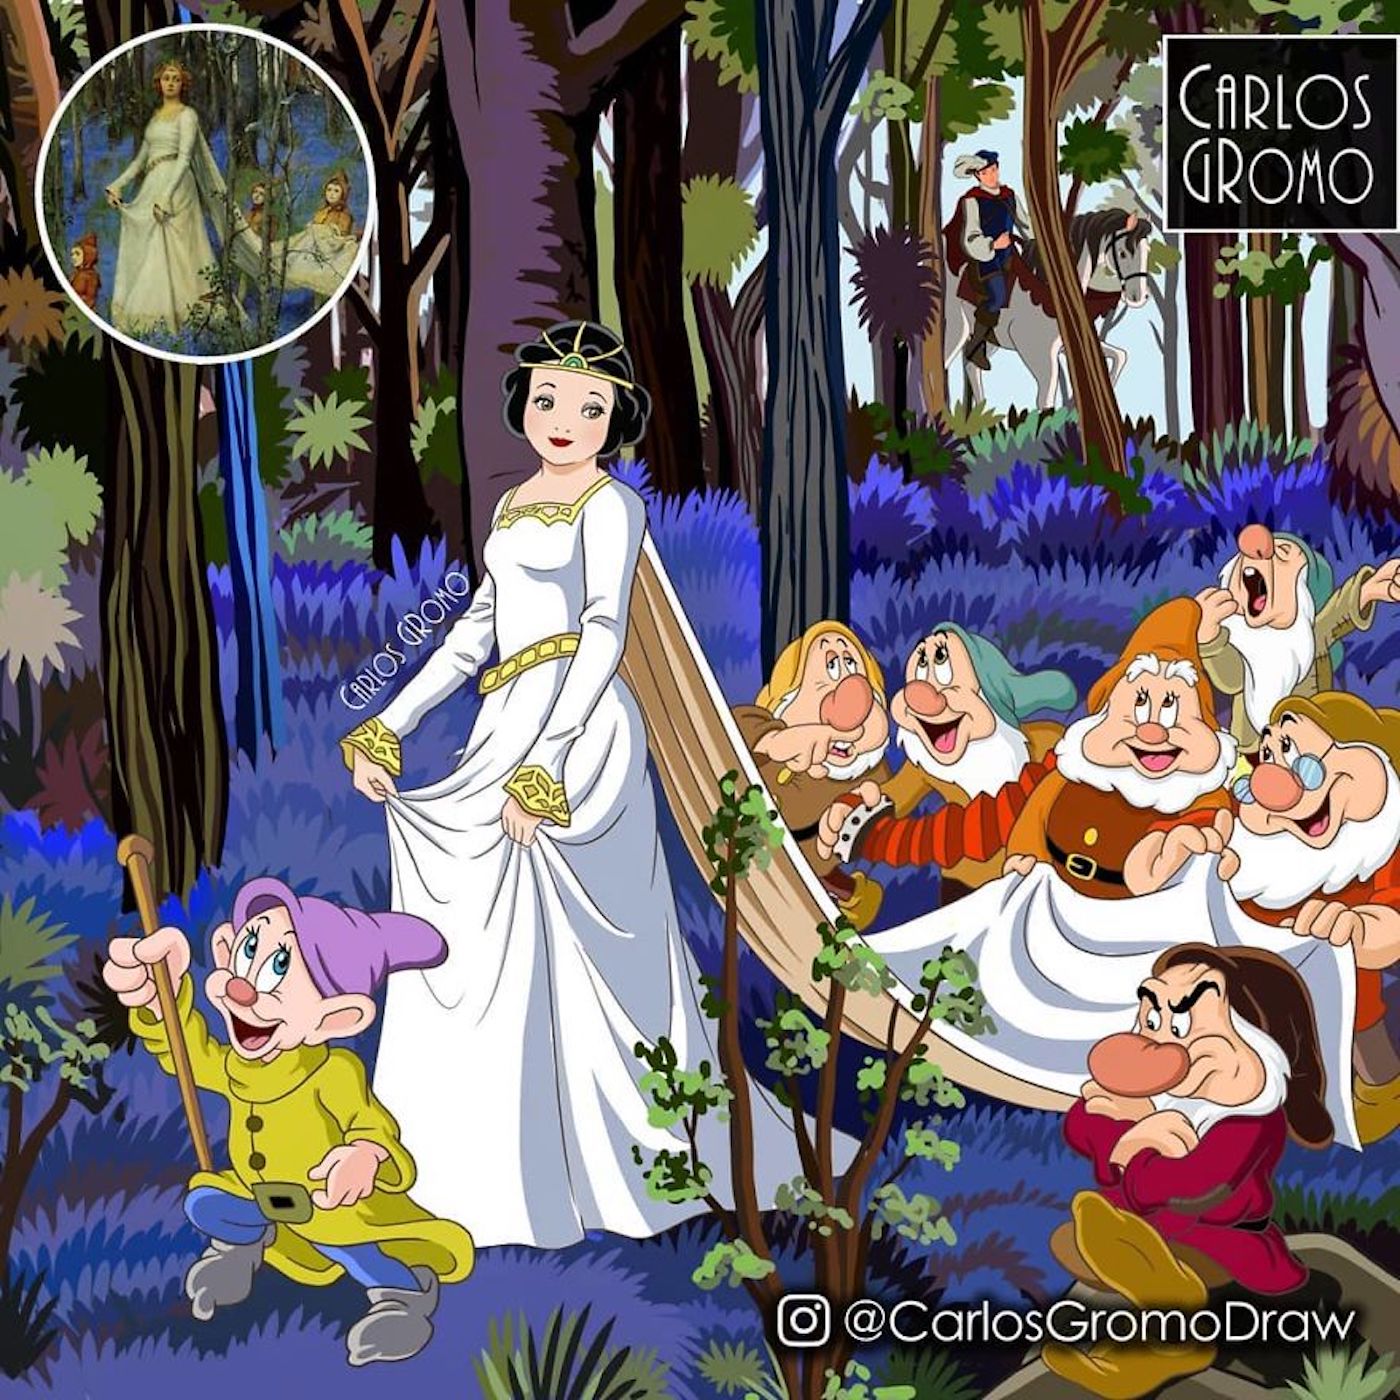 Carlos Gromo détourne les tableaux célèbres avec les personnages Disney